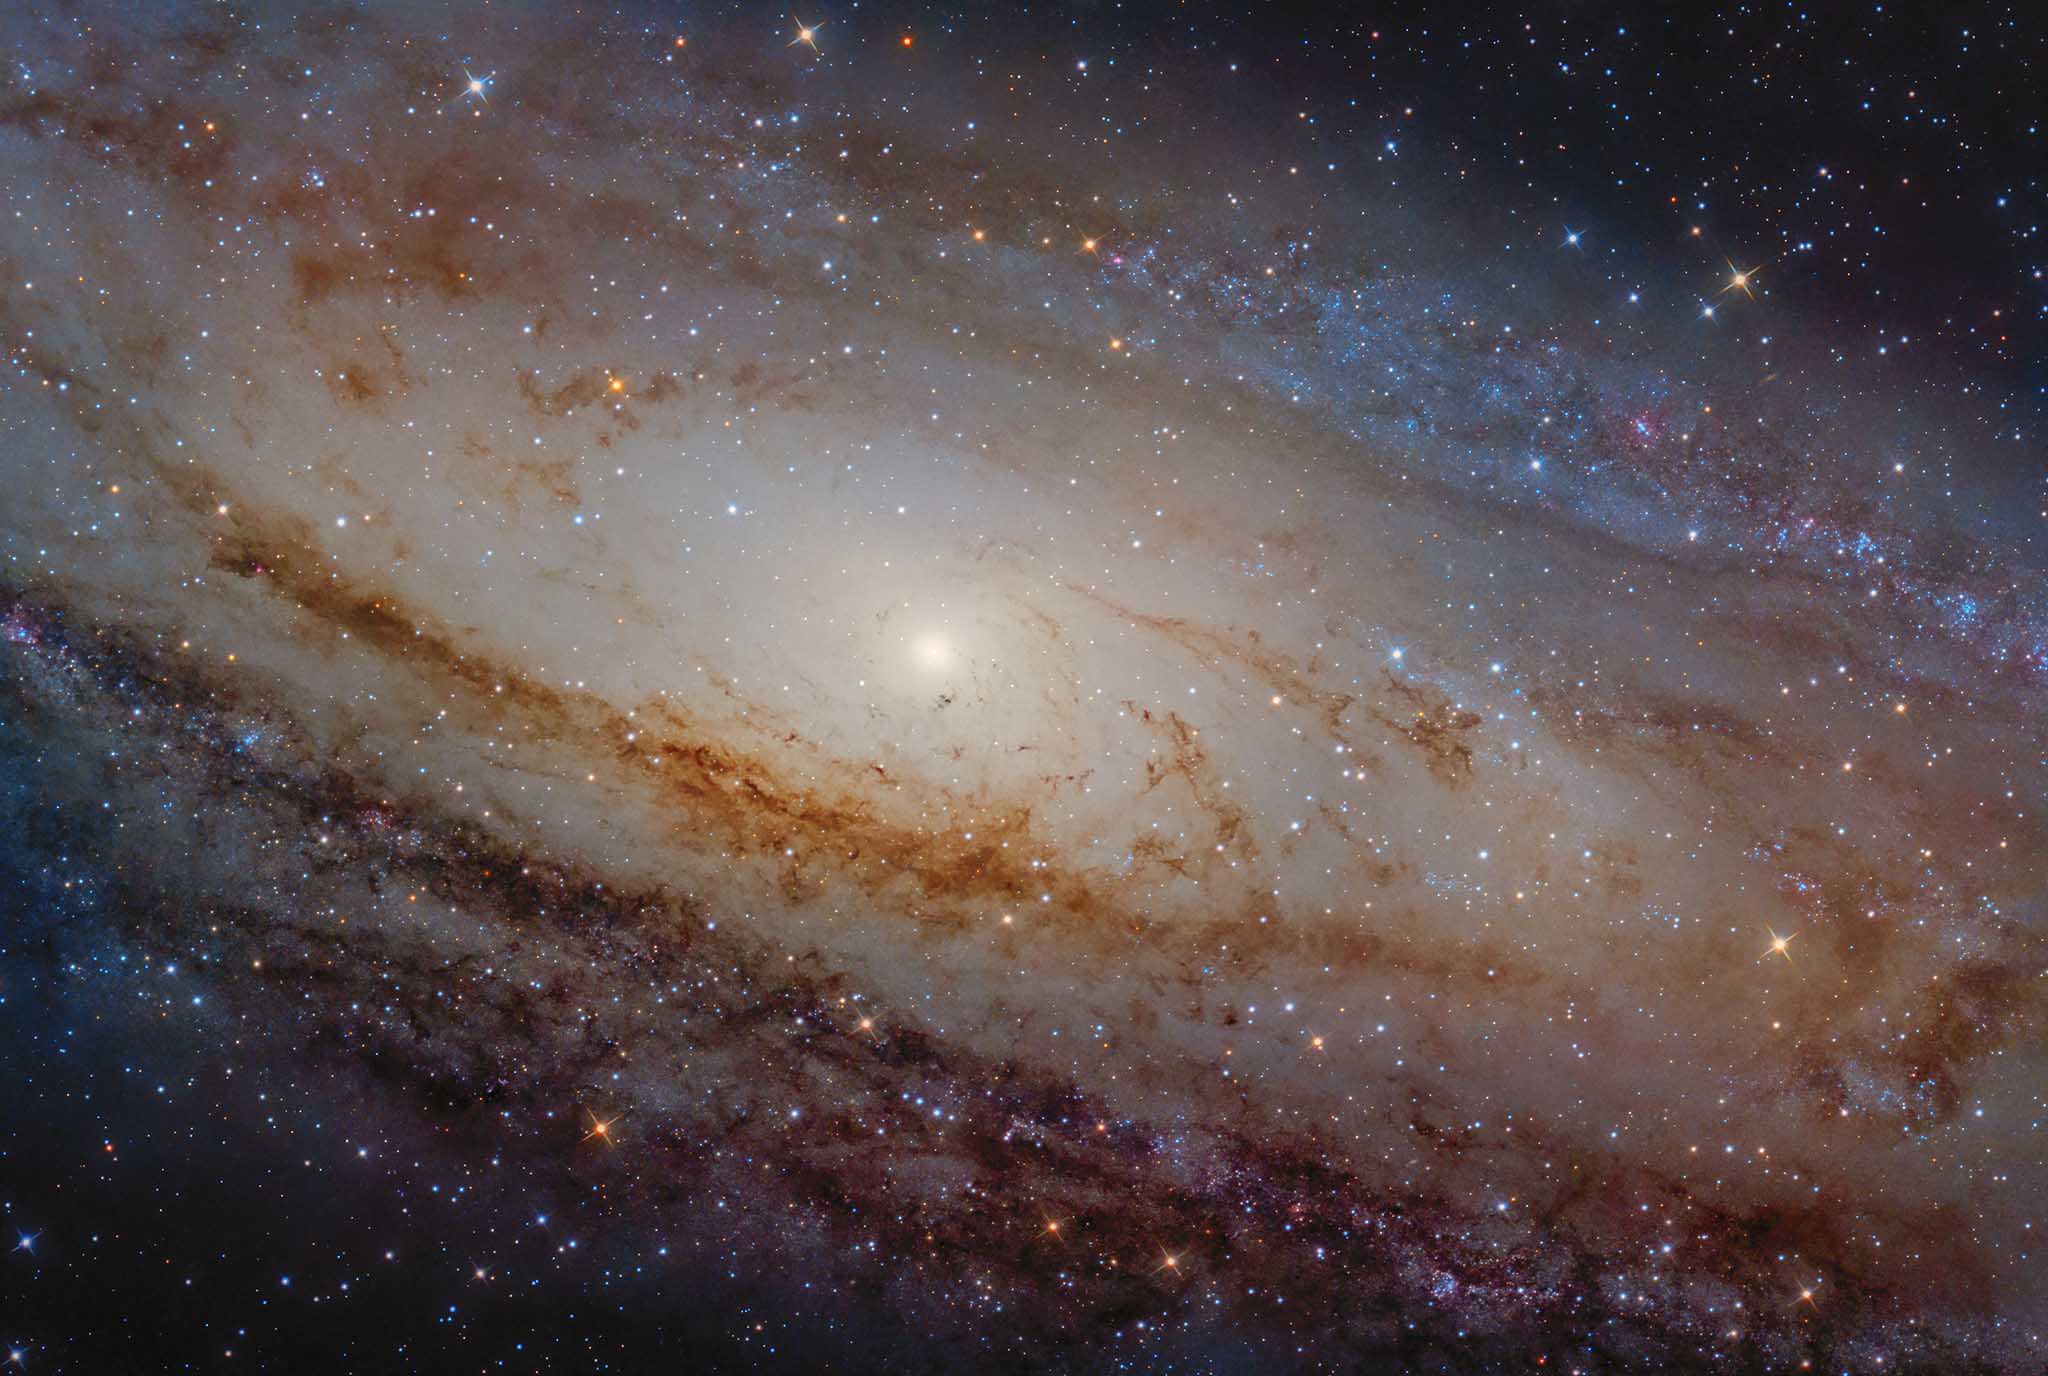 Dettaglio del nucleo galattico di andromeda e della sua spirale. Immagine fornita da Luca Fornaciari.